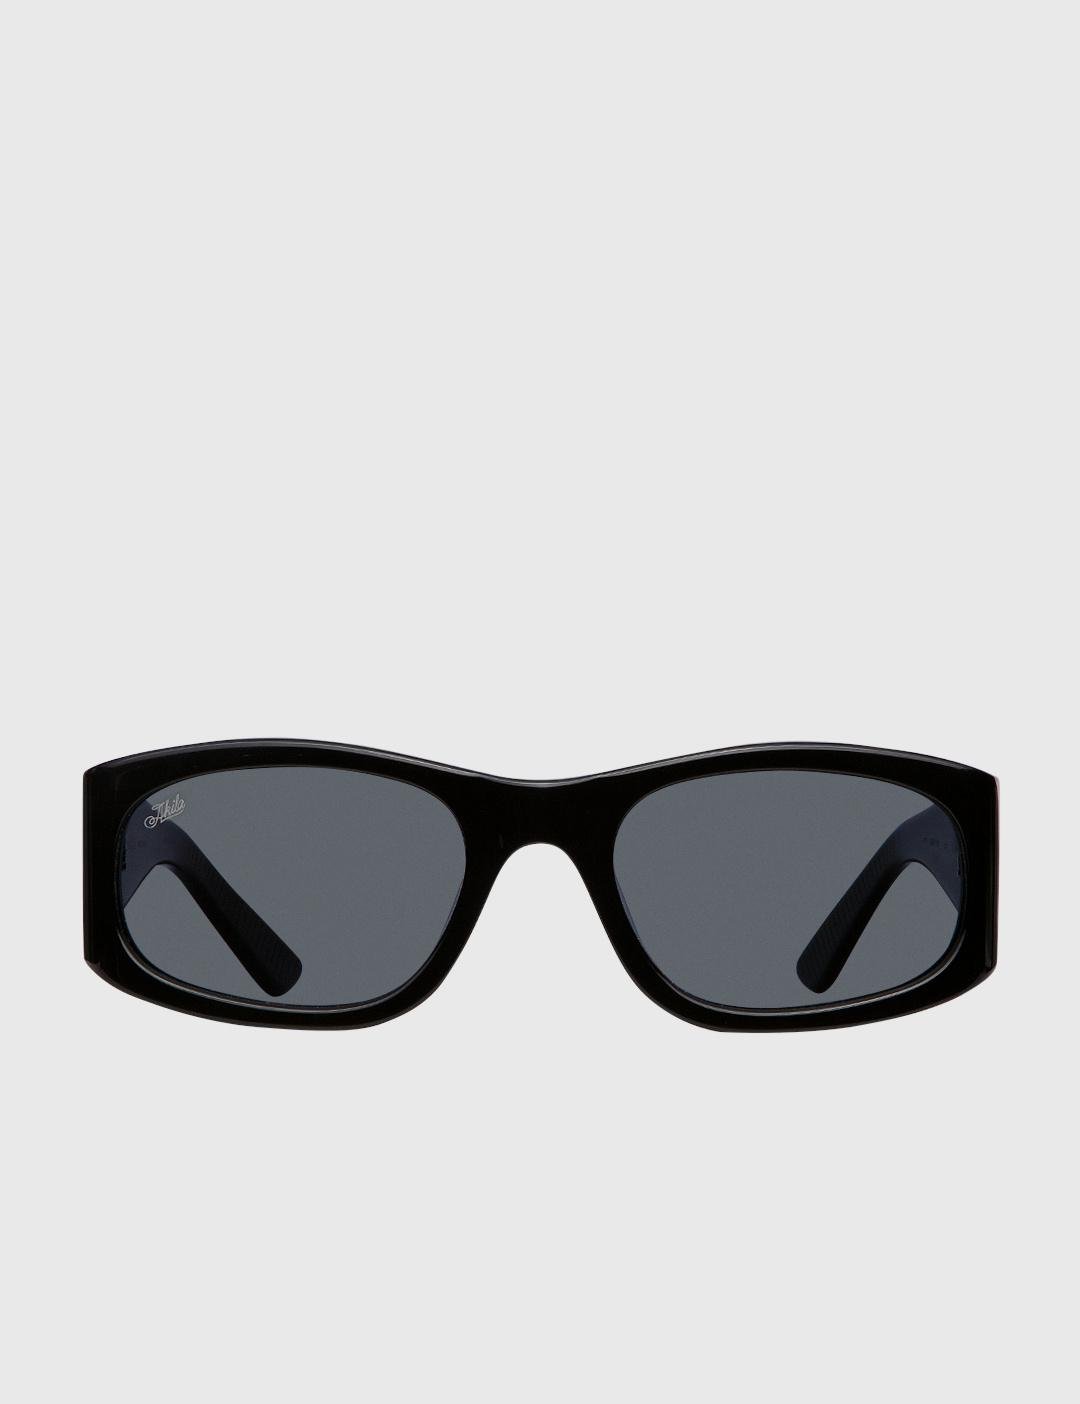 Eazy Sunglasses by AKILA